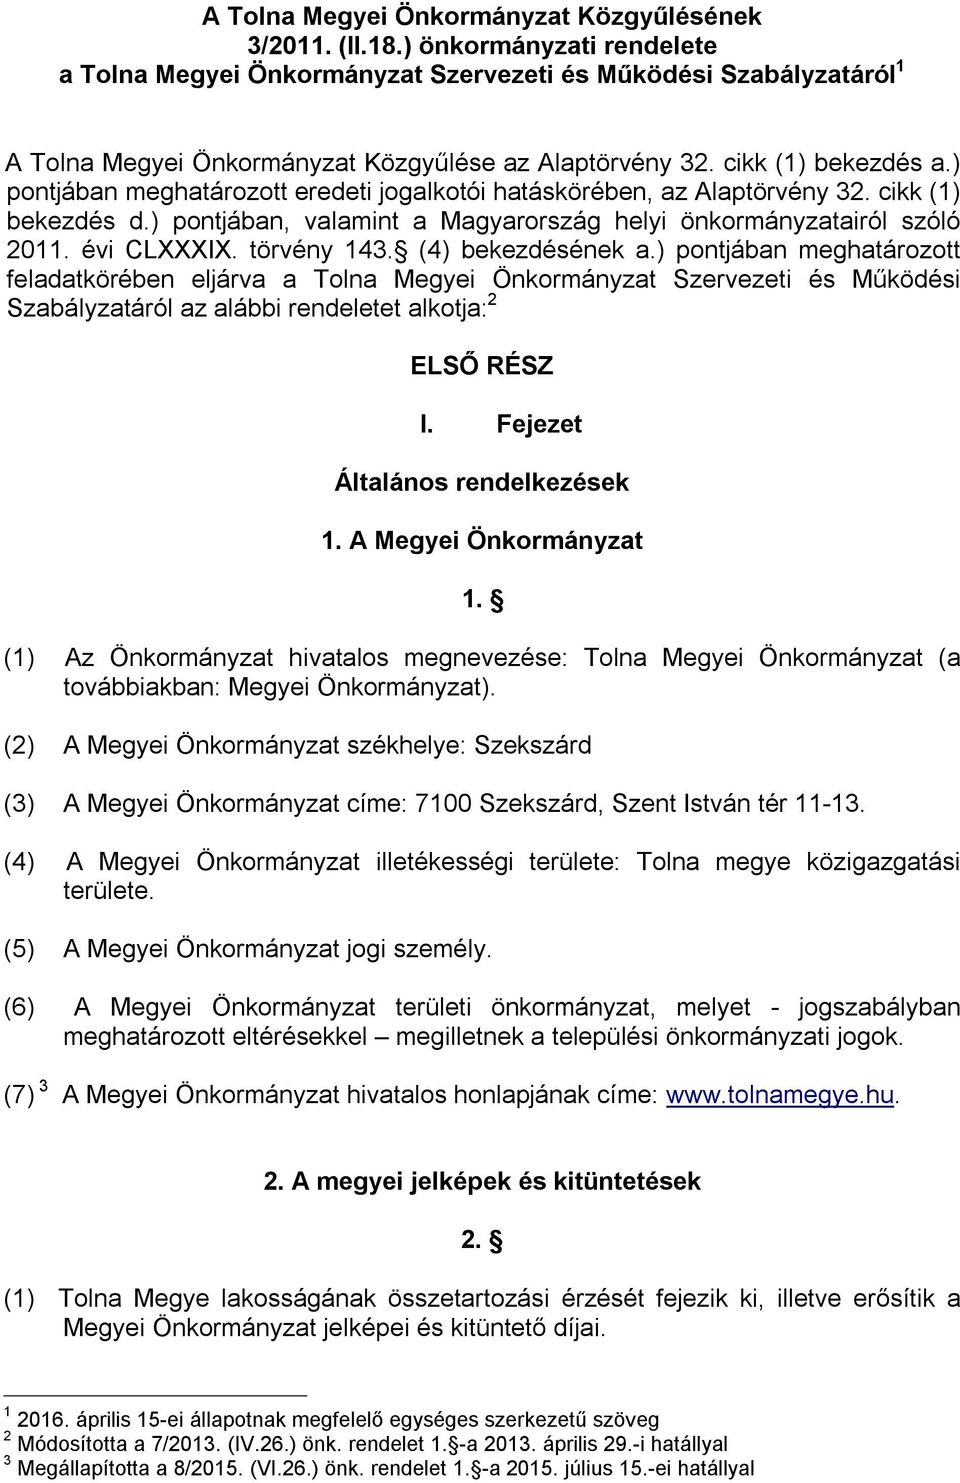 ) pontjában meghatározott eredeti jogalkotói hatáskörében, az Alaptörvény 32. cikk (1) bekezdés d.) pontjában, valamint a Magyarország helyi önkormányzatairól szóló 2011. évi CLXXXIX. törvény 143.